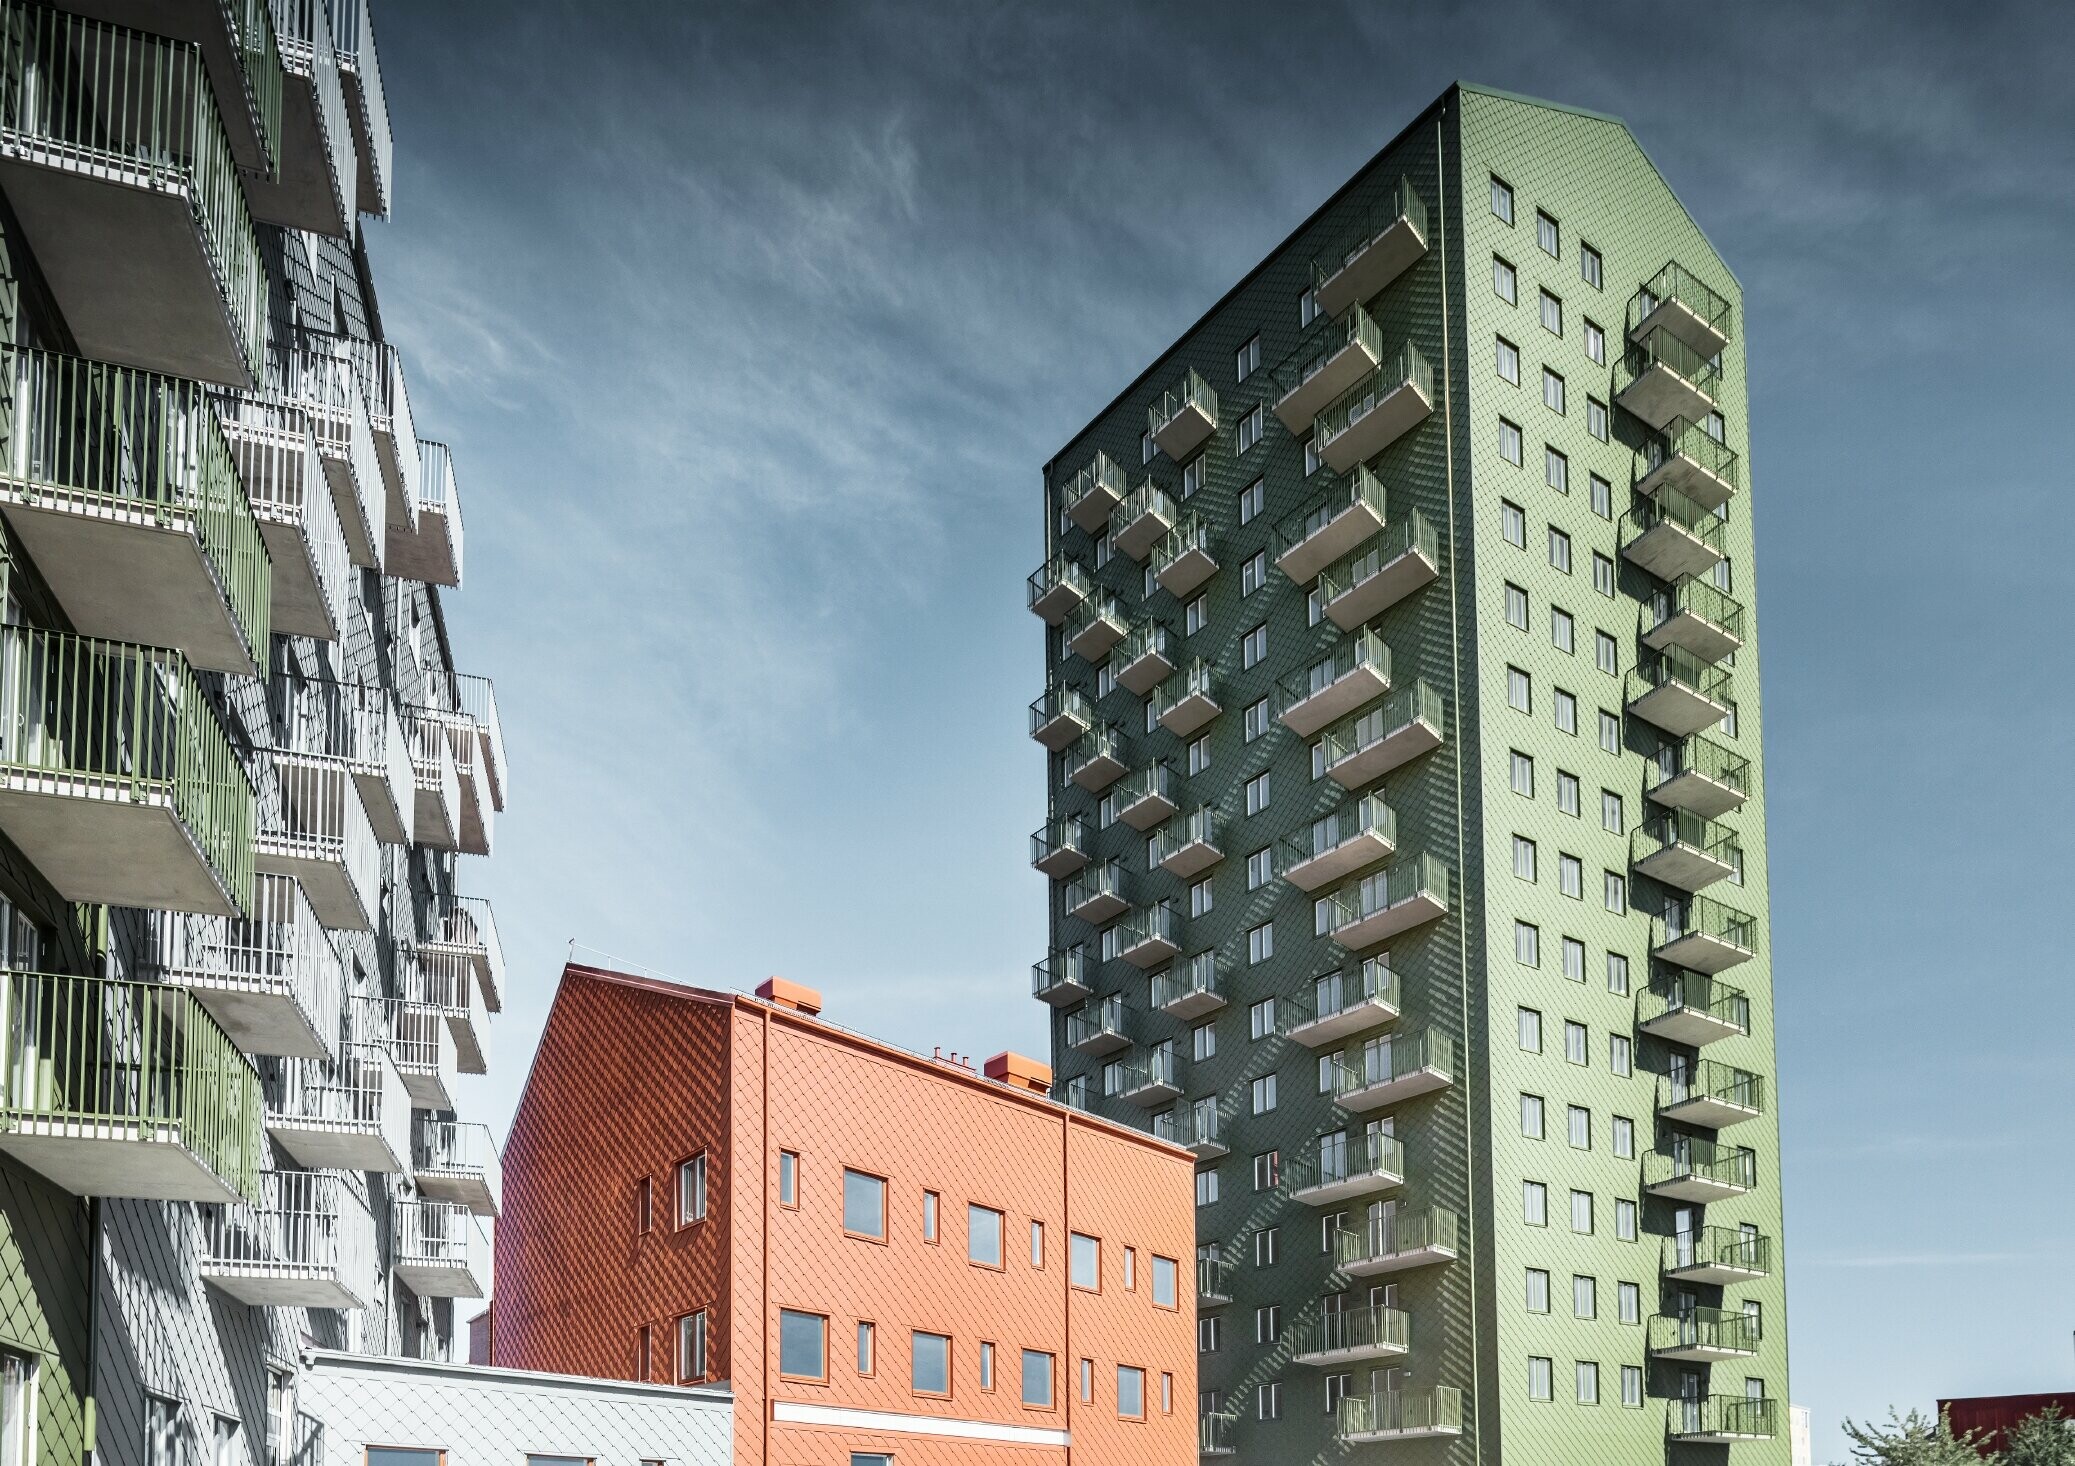 Više stambenih zgrada obloženih PREFA zidnim rombom 29 × 29 u bojama maslinasto zelena, ciglasto crvena i svijetlo siva u Göteborgu, Švedska.